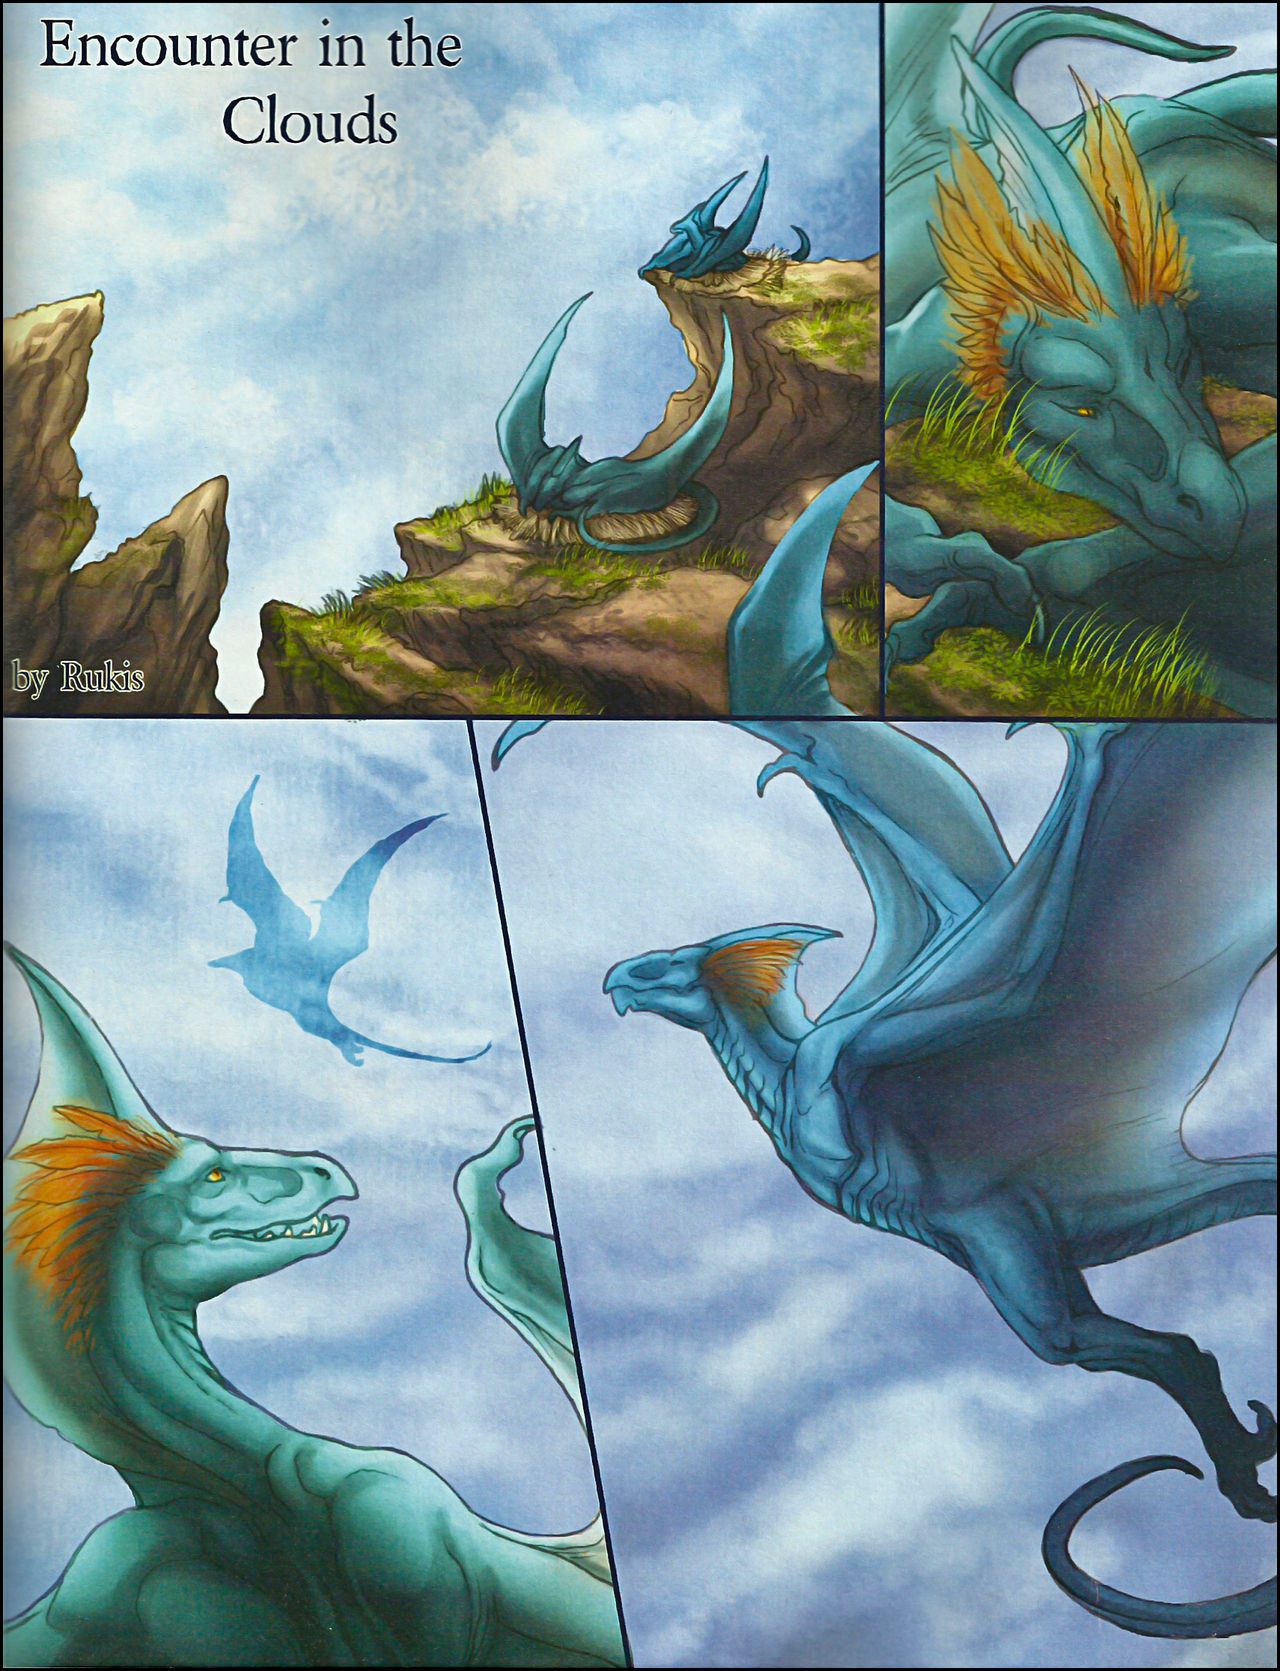 dragon\'s istif birim 2 (composition bu farklı artists)